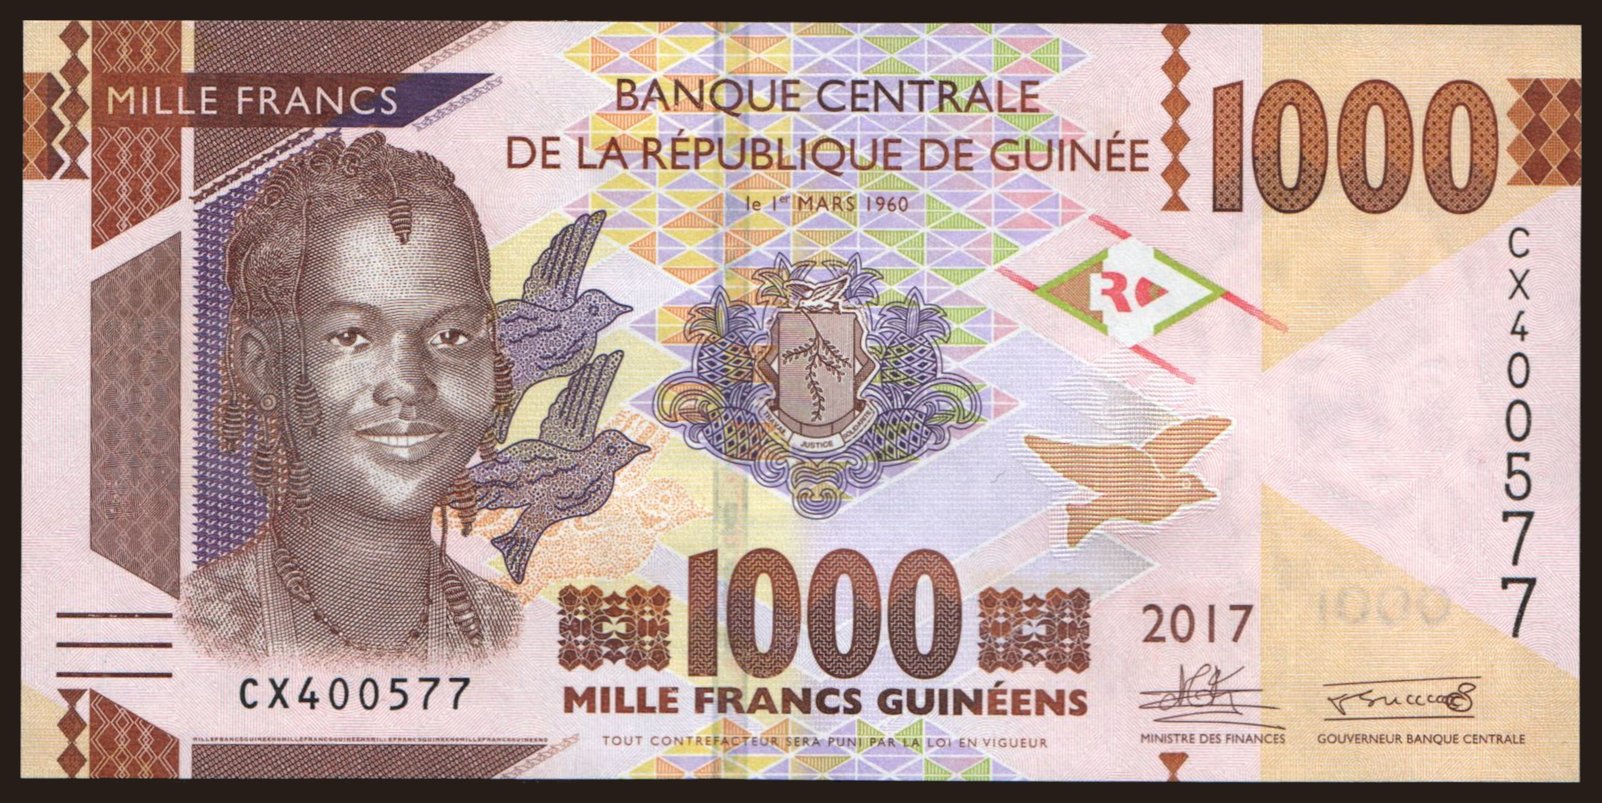 1000 francs, 2017